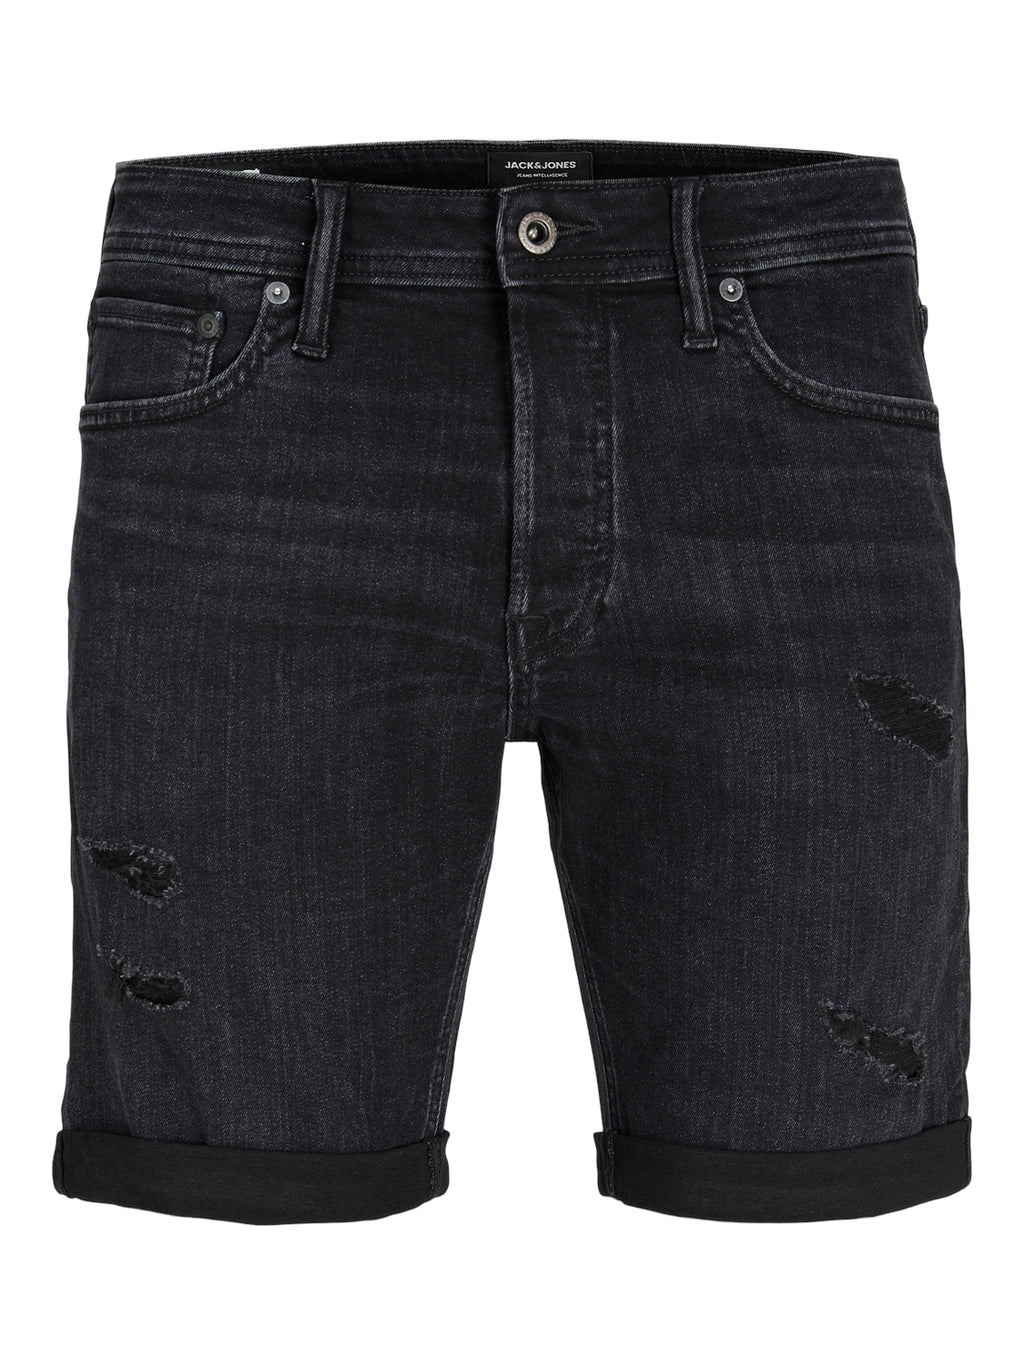 Jack & Jones Rick Denim Shorts Black Distressed - Raw Menswear